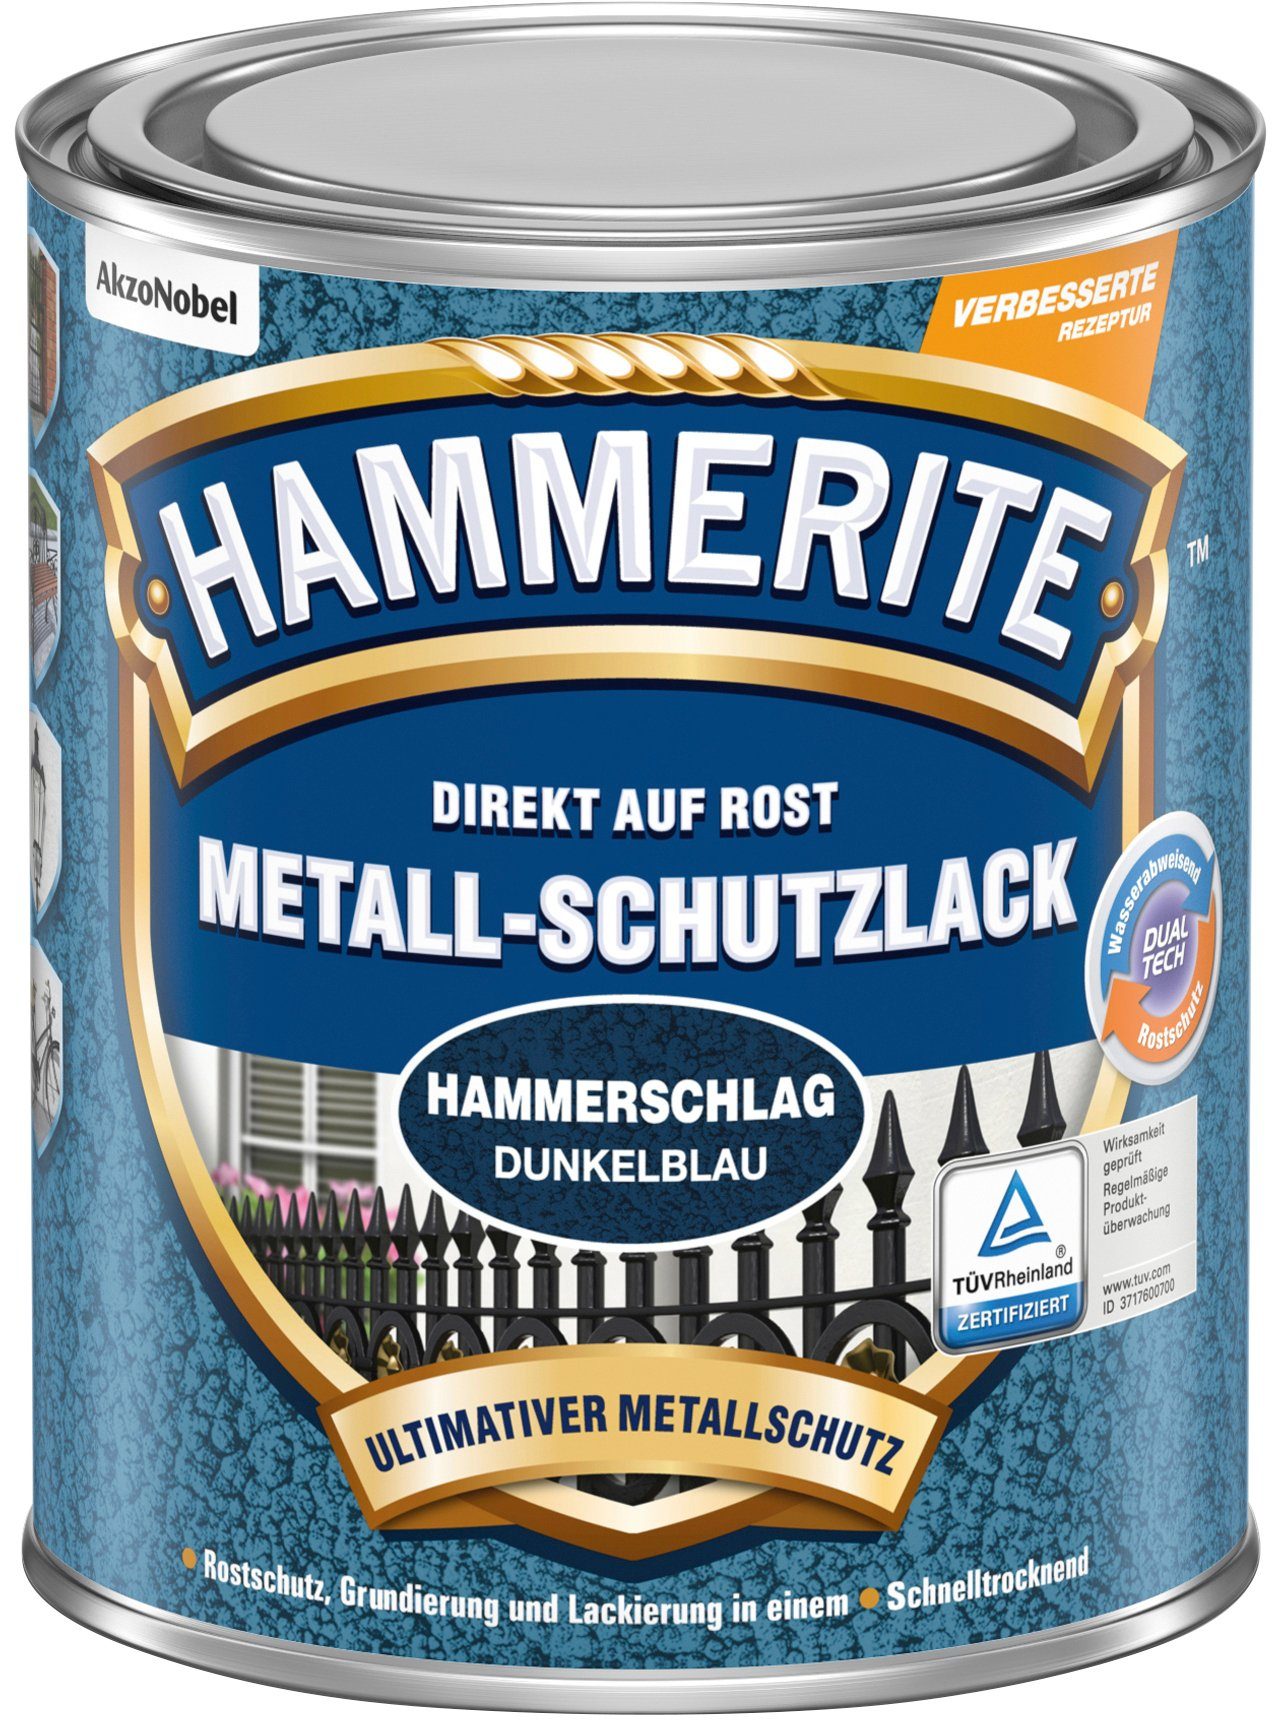 0,25 AUF Metallschutzlack Hammerschlag, DIREKT Liter Hammerite  ROST,